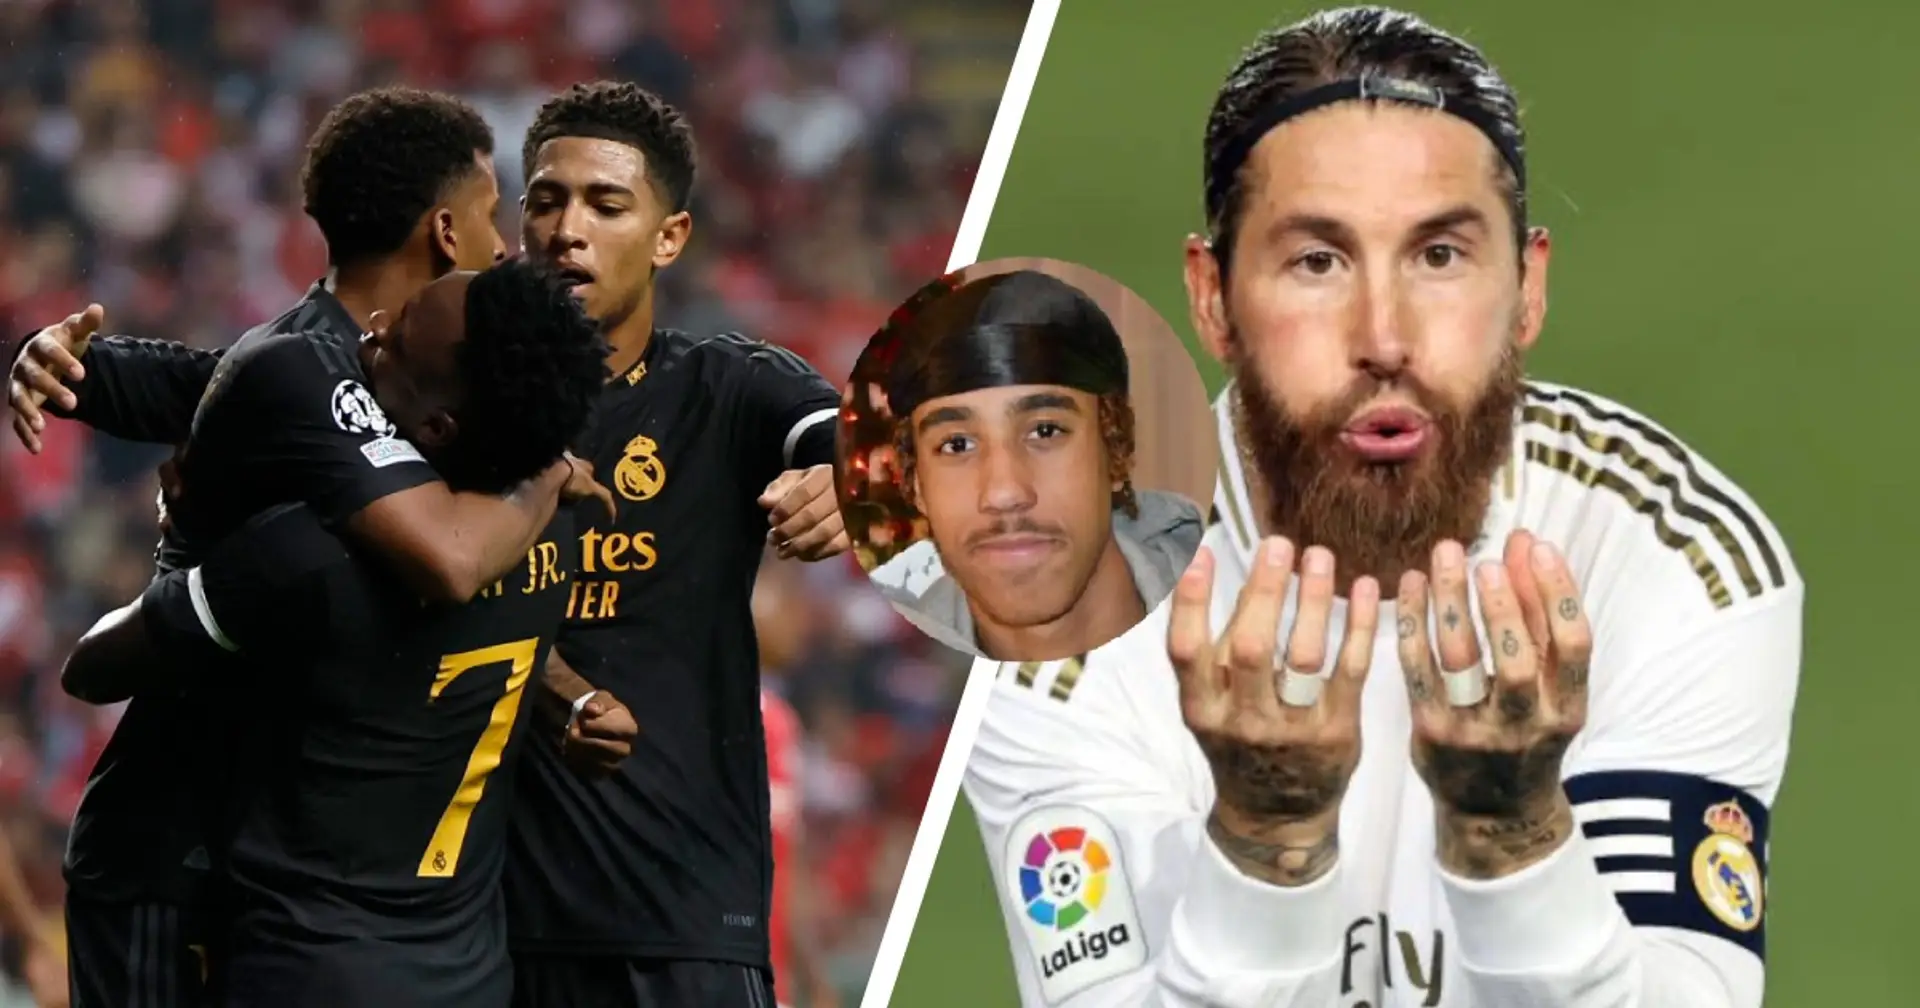 El Real Madrid identifica otro 'talento generacional': idolatra a Ramos